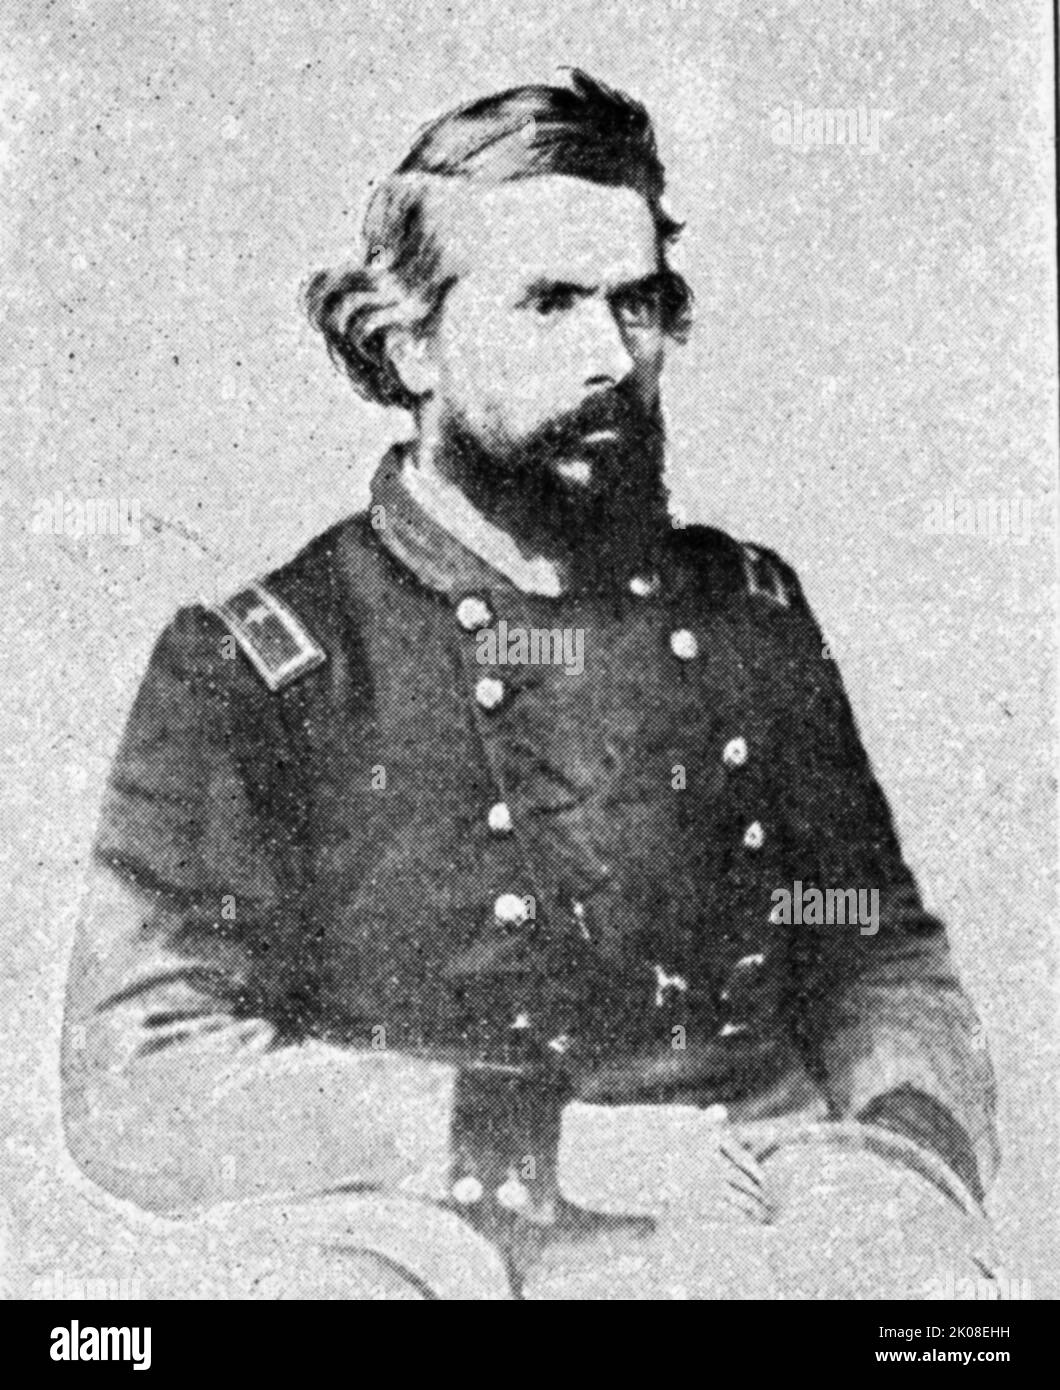 Truman Seymour (24 settembre 1824 – 30 ottobre 1891) è stato un . Servì nell'esercito dell'Unione durante la guerra civile americana, salendo al rango di generale maggiore Foto Stock